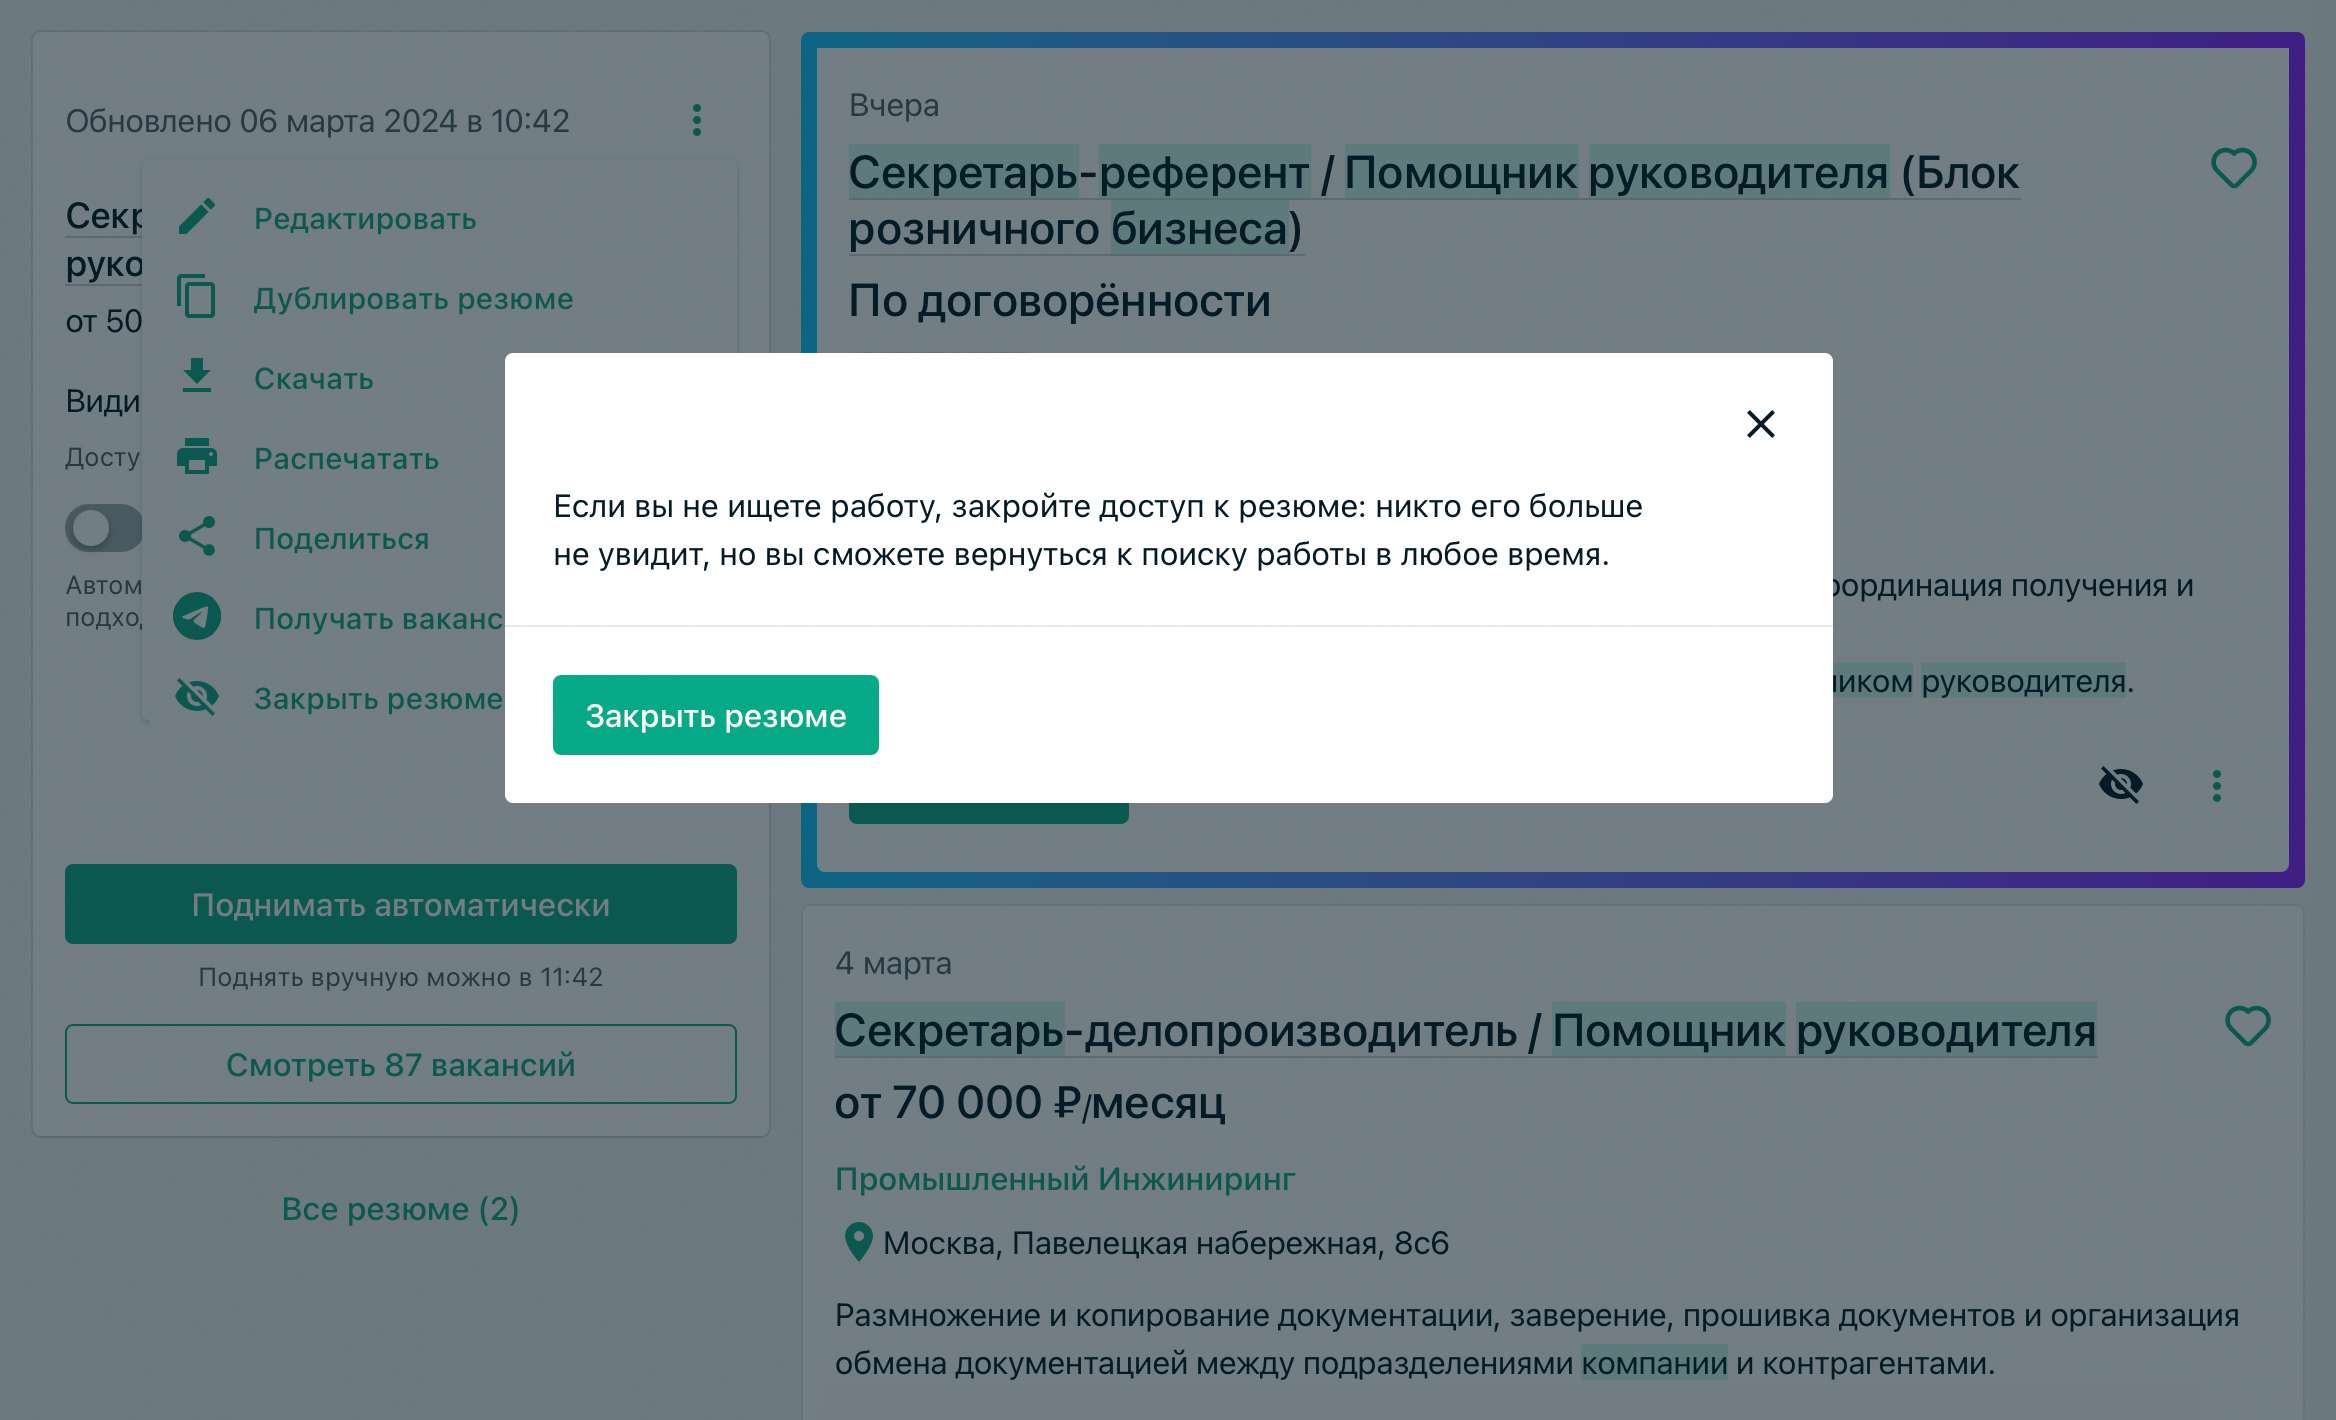 Инструкция, как закрыть доступ к резюме на SuperJob. Источник: superjob.ru